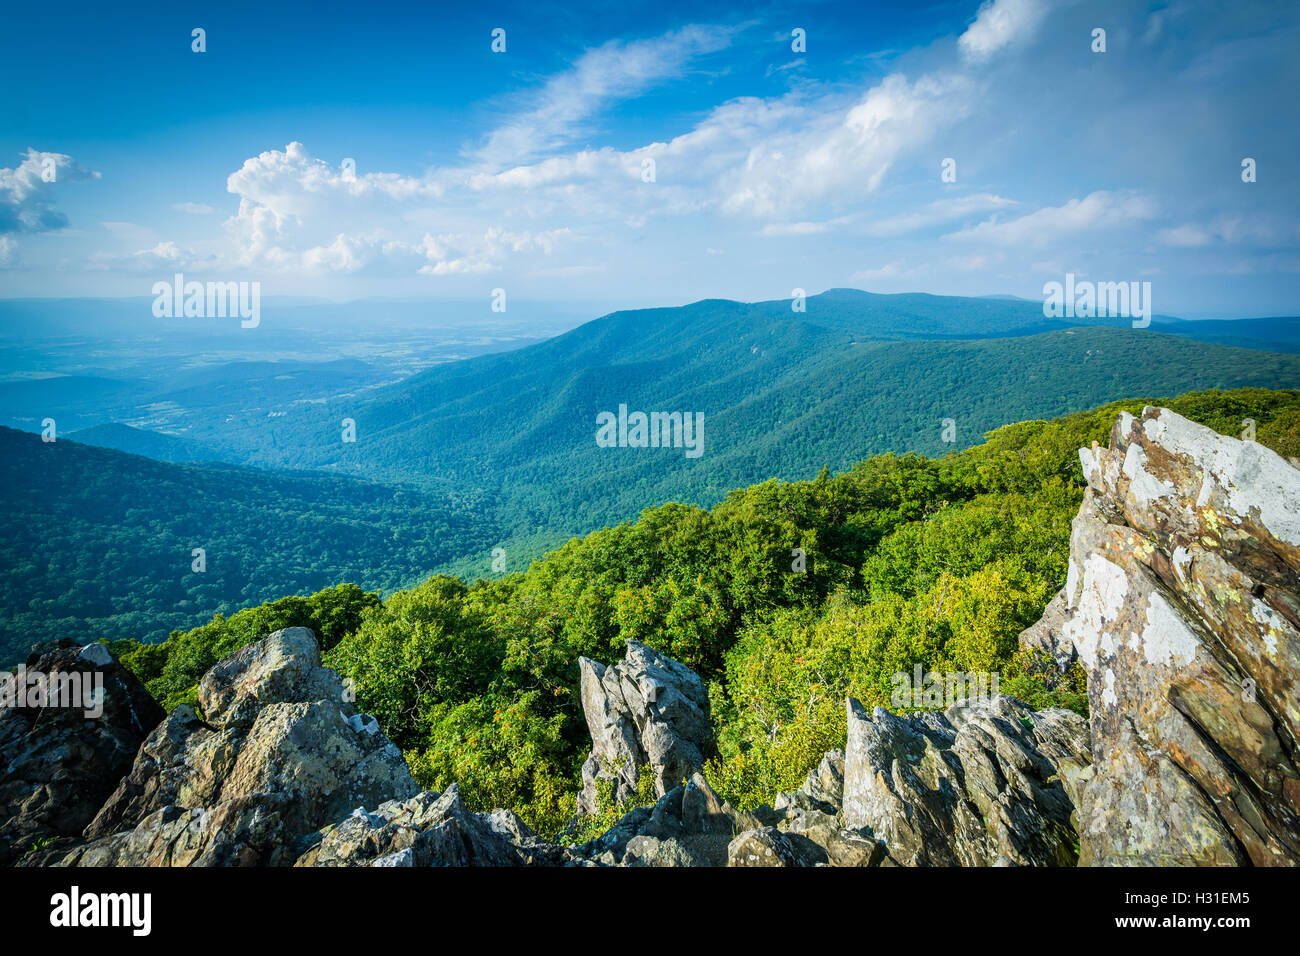 Vista del Valle de Shenandoah y Blue Ridge de Cumbre de carey, en el Parque Nacional Shenandoah, Virginia. Foto de stock